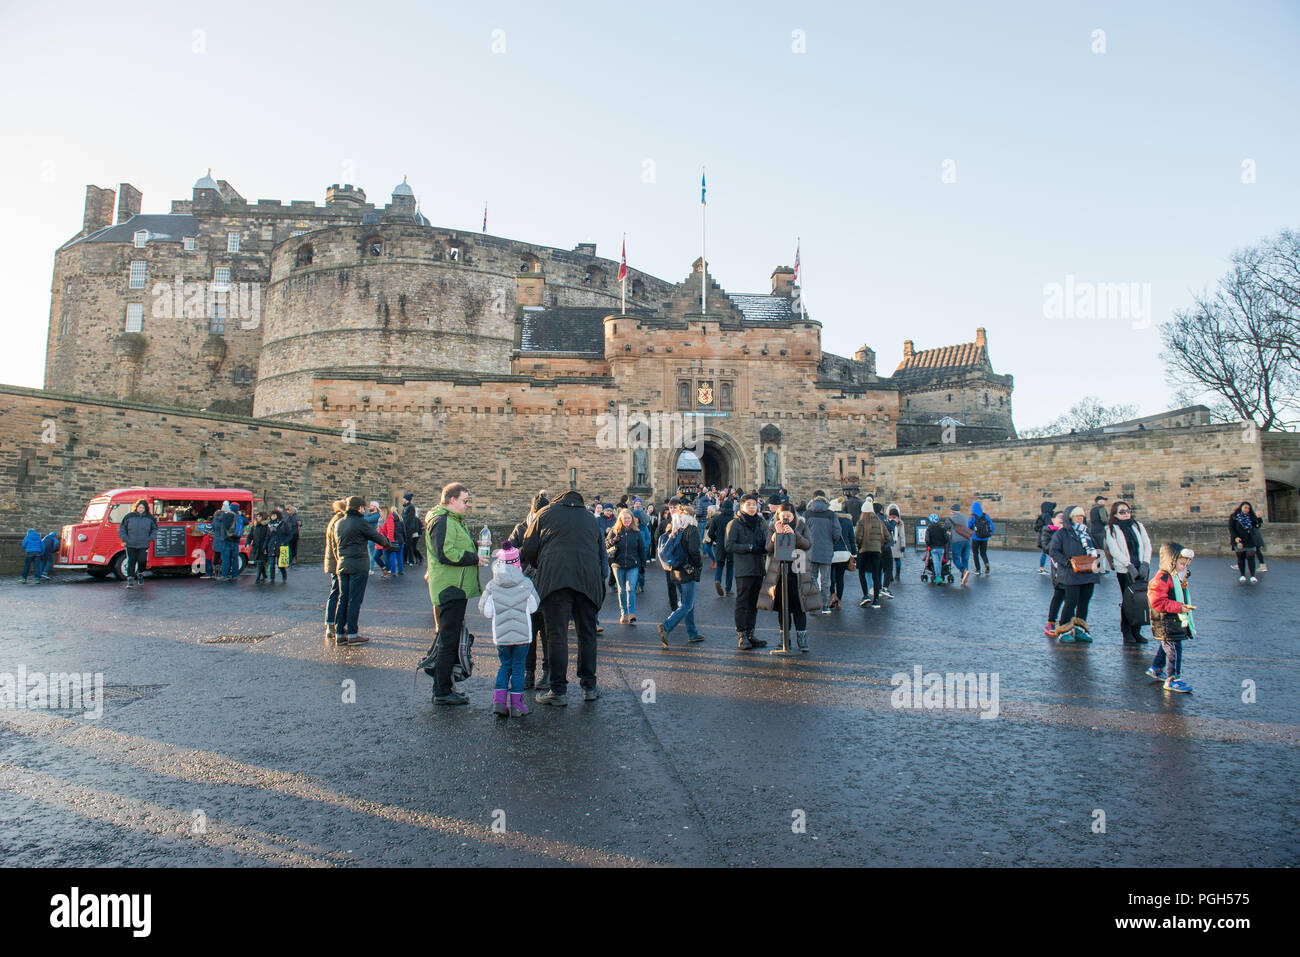 Allgemeine Aufnahmen von Touristen in Edinburgh Castle Esplanade für Geschichte auf Besucherzahlen, Tourismus Stockfoto